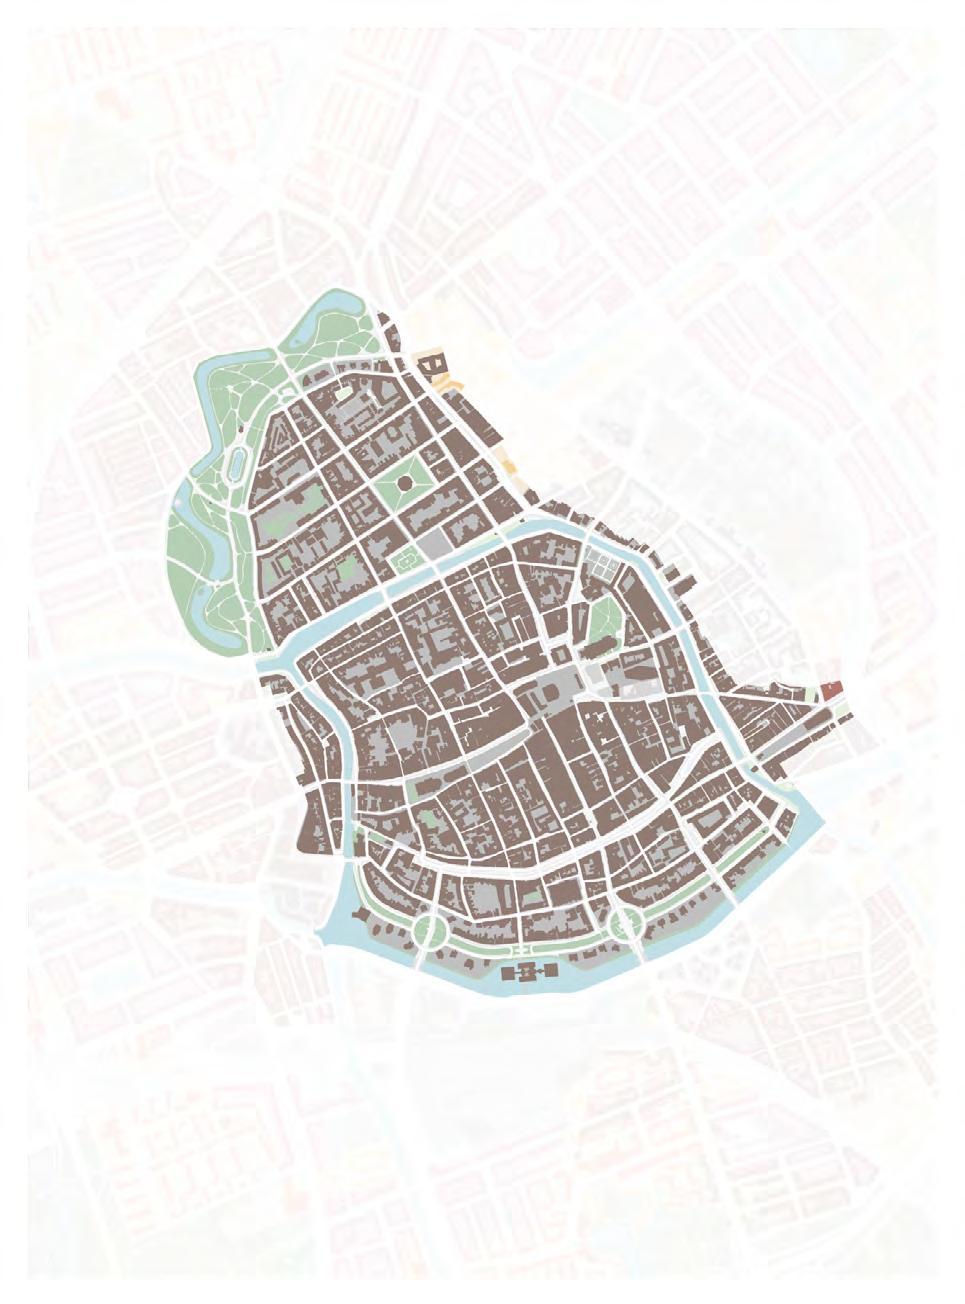 Inleiding De hier gepresenteerde samenvatting is gebaseerd op de toelichting bij het besluit tot aanwijzing van de binnenstad van Groningen als beschermd stadsgezicht.